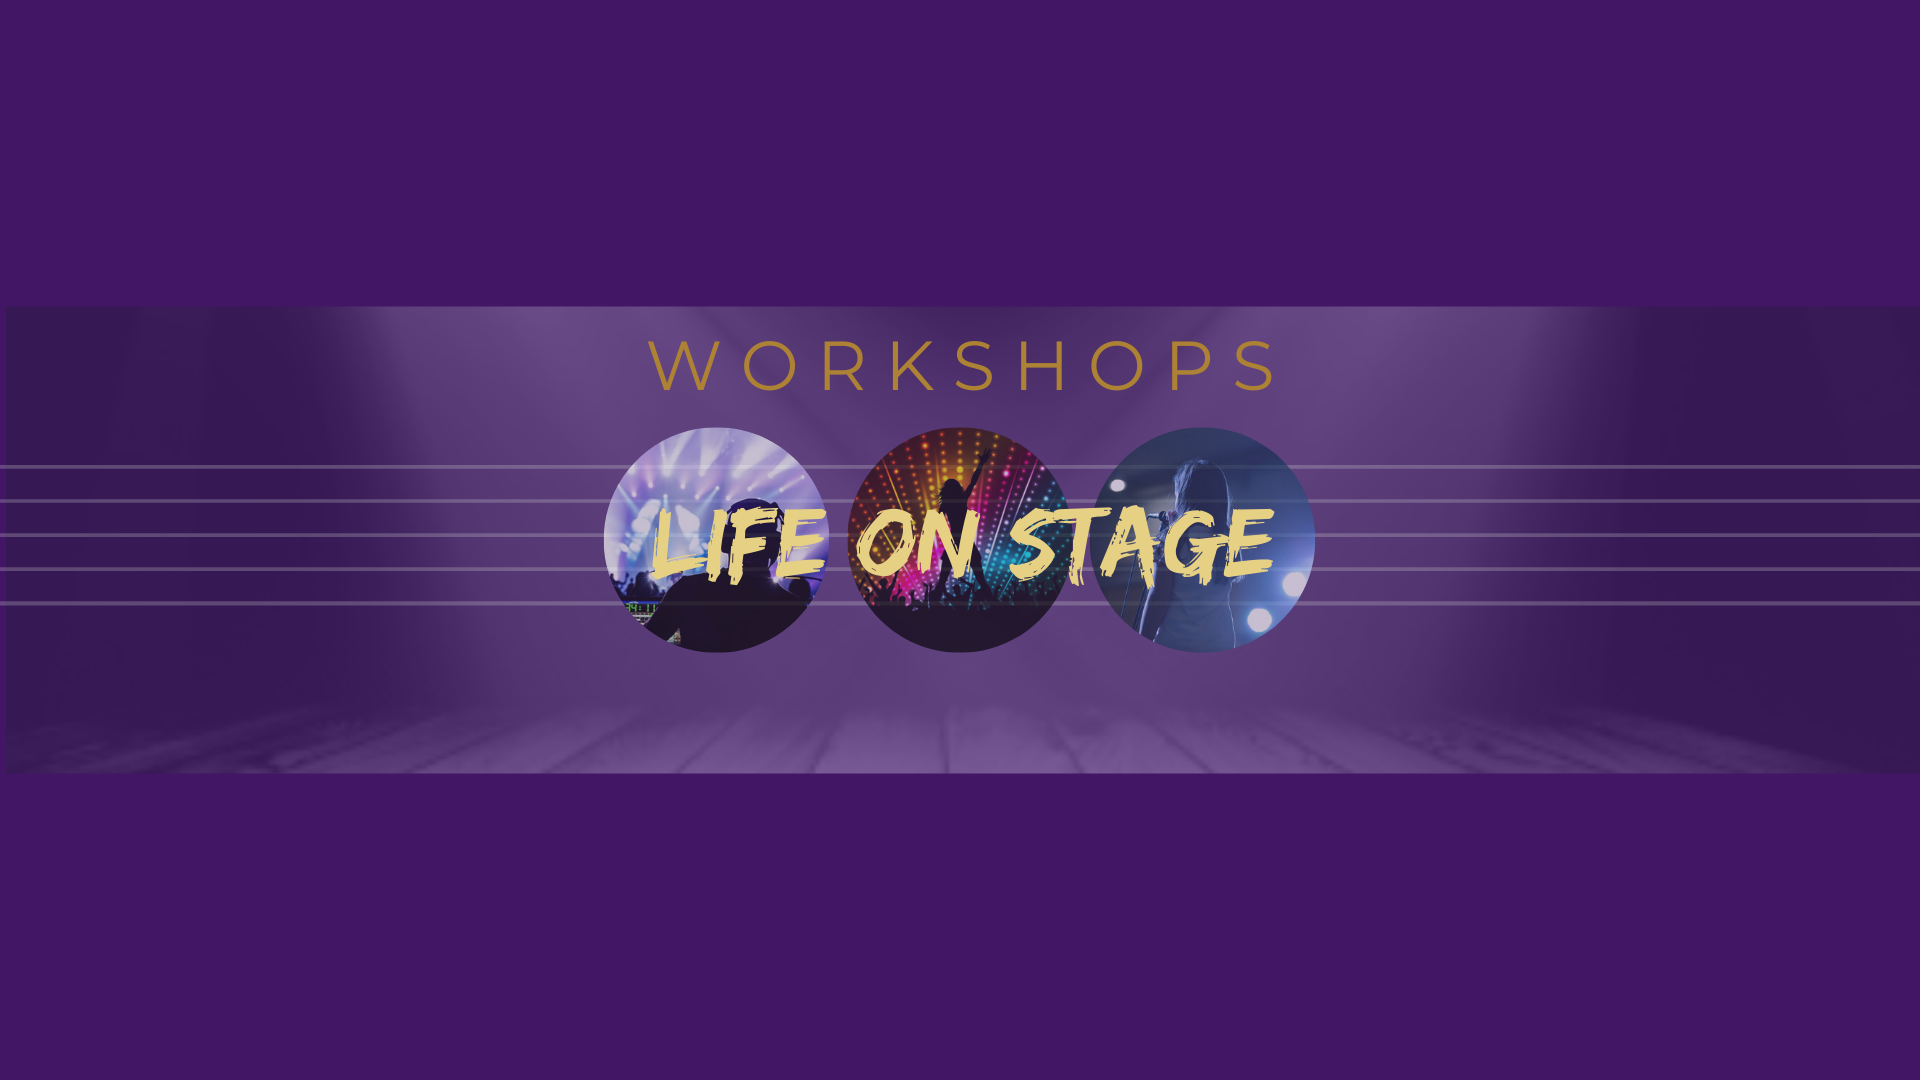 Workshop Live on Stage